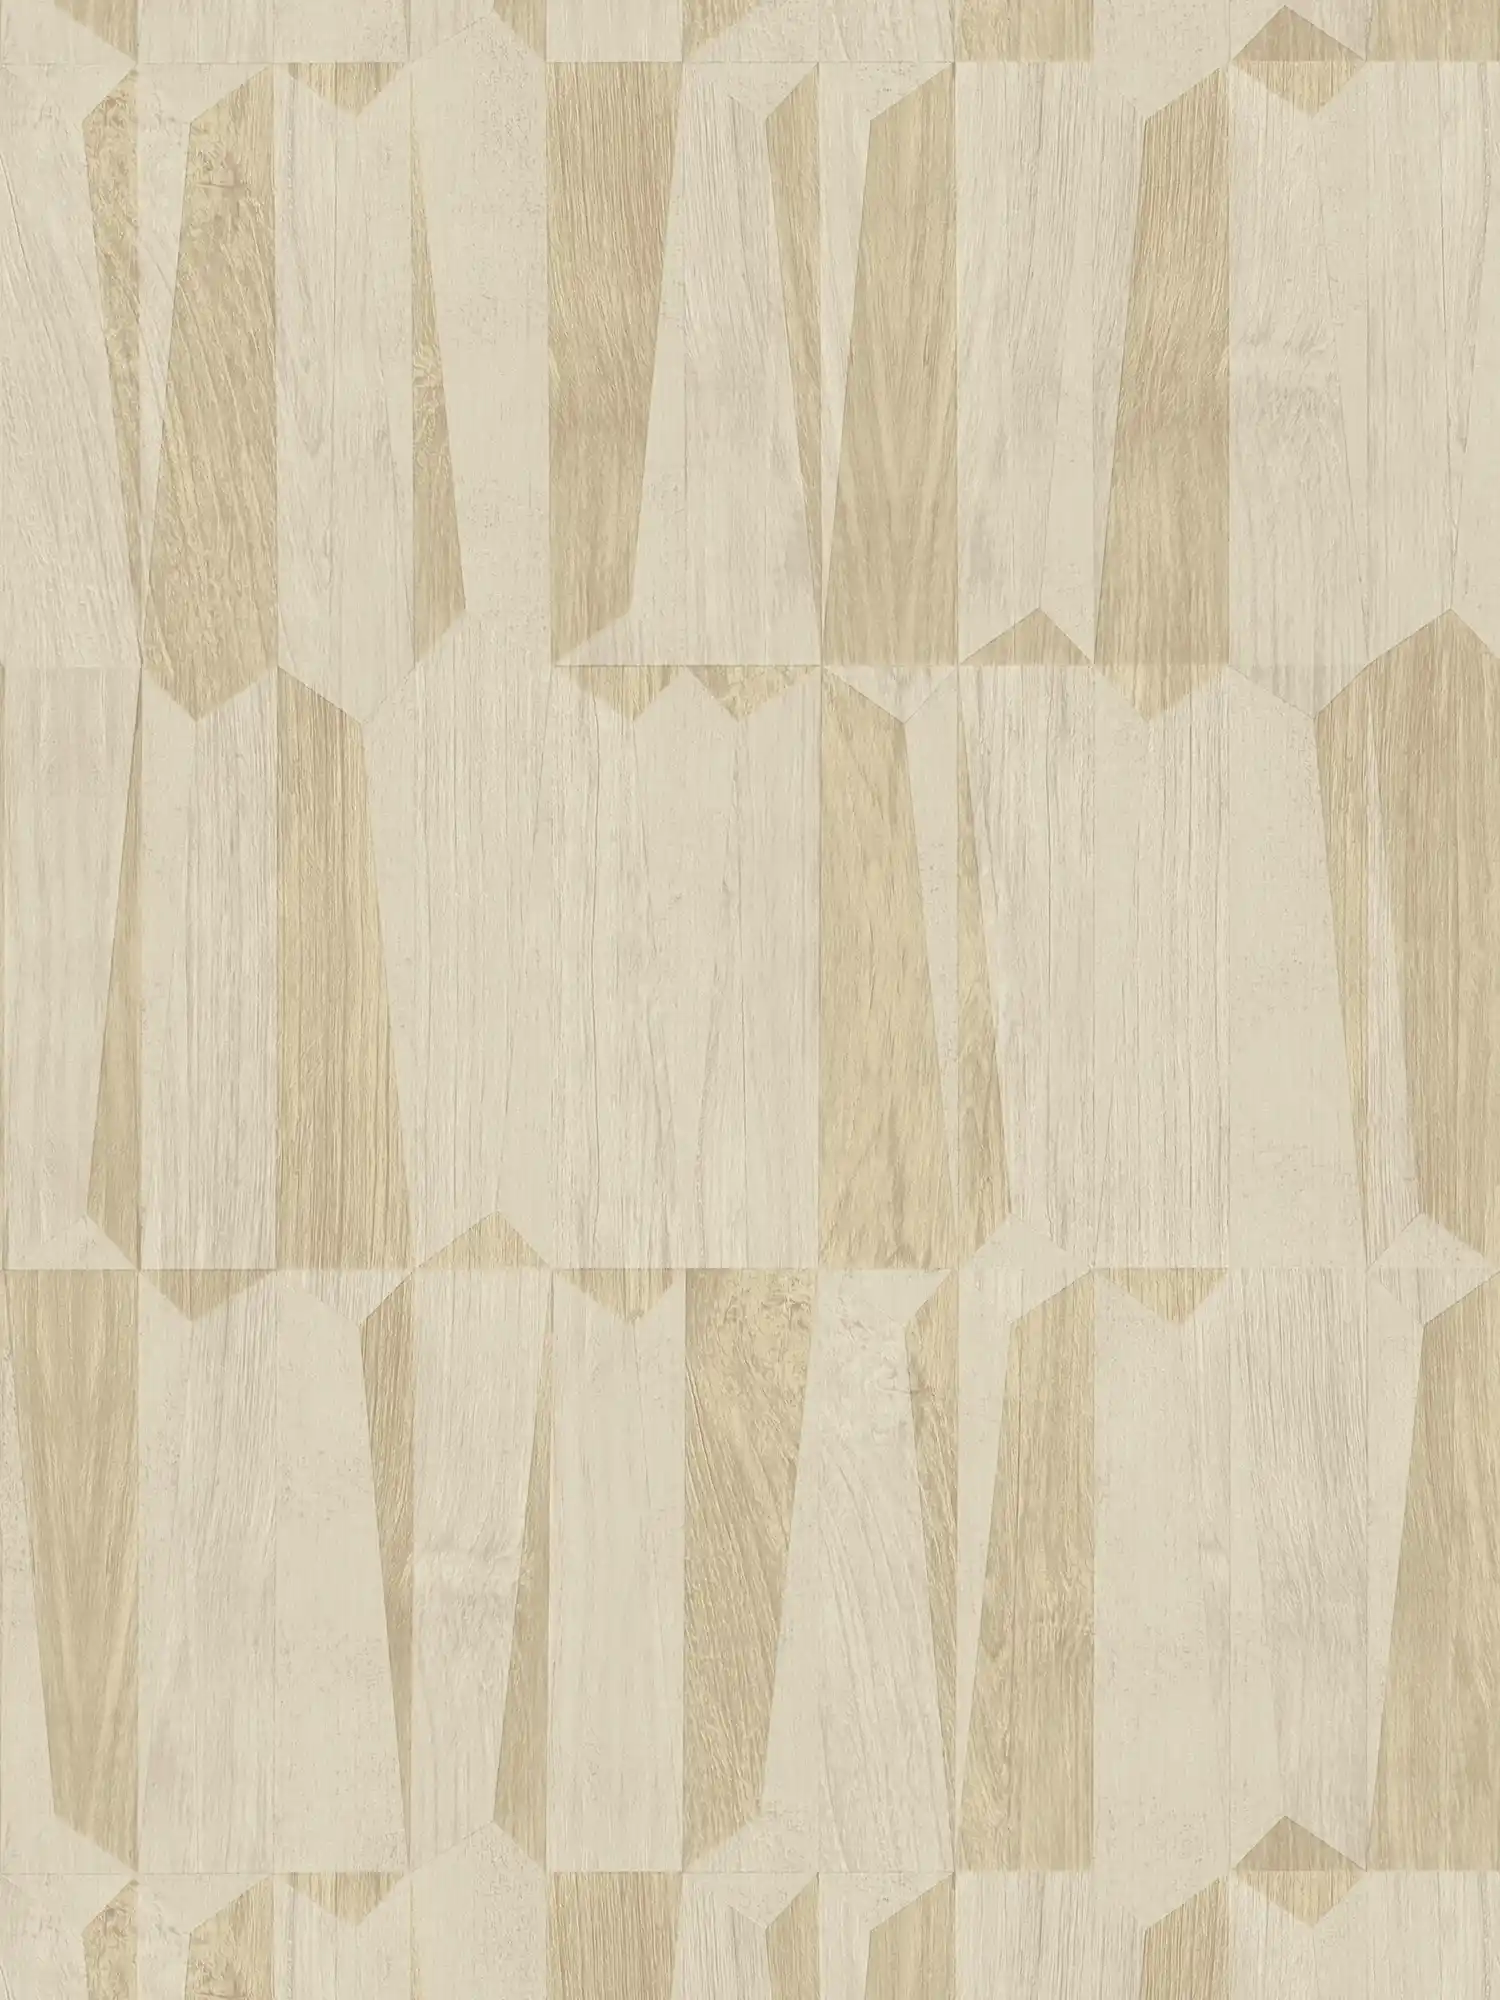 Metallic wallpaper with wood look in facet pattern - beige, grey
